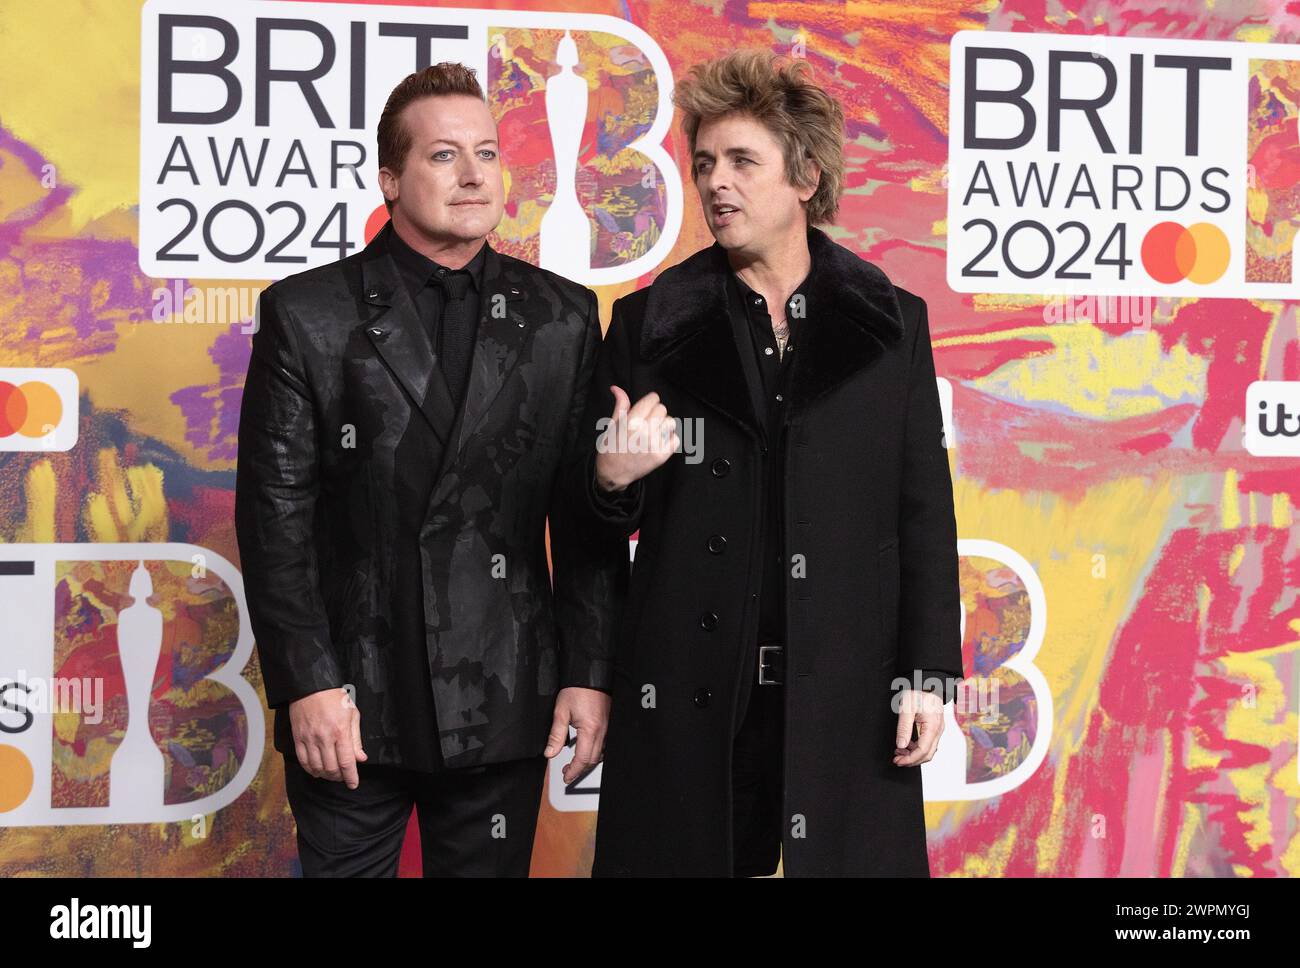 Londres, Royaume-Uni. 2 mars 2024. (USAGE ÉDITORIAL UNIQUEMENT. AUCUNE PUBLICATION CONSACRÉE EXCLUSIVEMENT À L'ARTISTE) Tré Cool et Billie Joe Armstrong de Green Day assistent aux Brit Awards 2024 à l'O2 Arena le 02 mars 2024 à Londres, Angleterre. Crédit : S.A. / Alamy Live News Banque D'Images